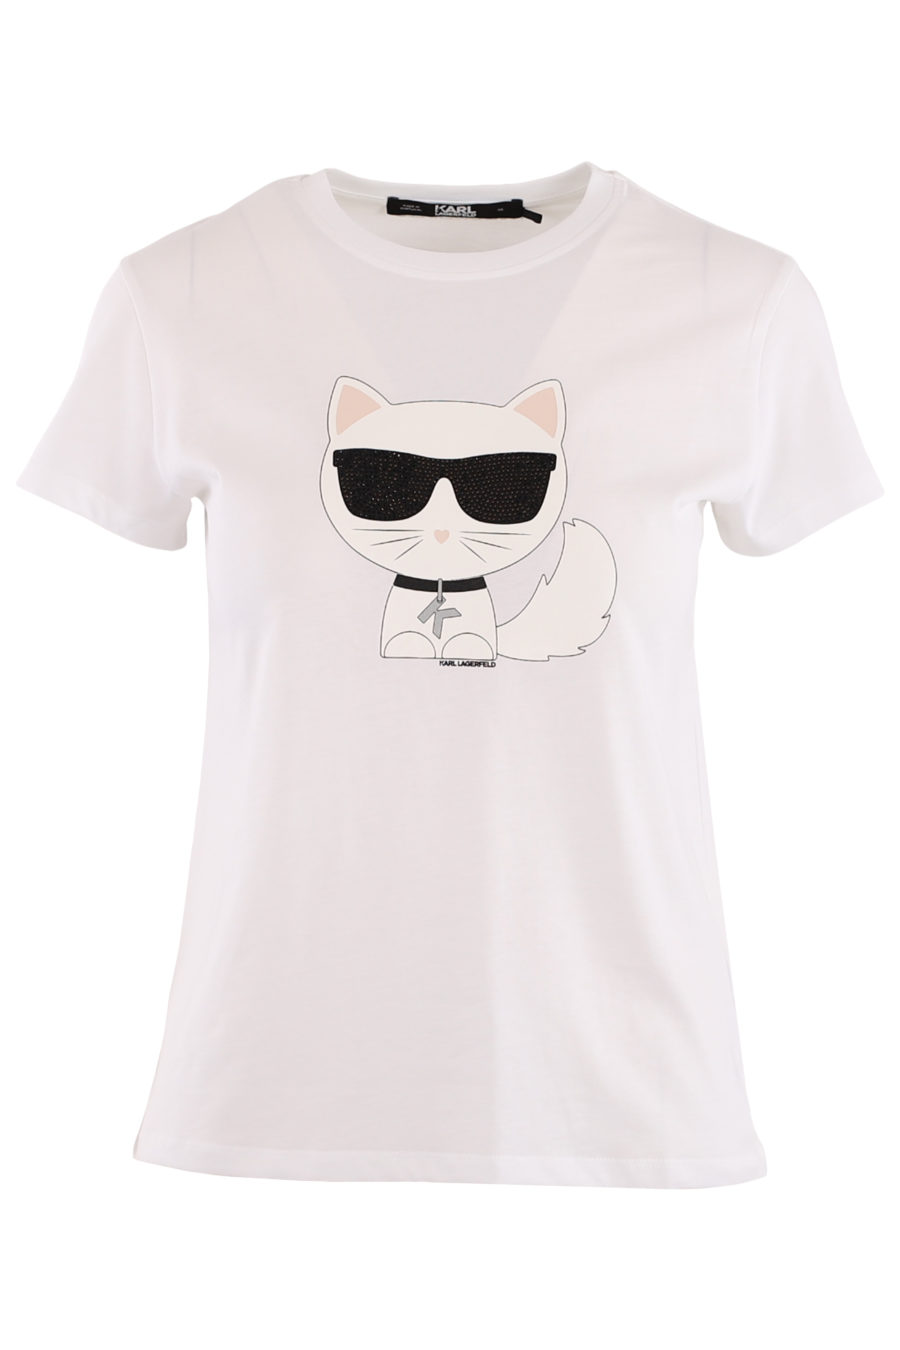 Camiseta blanca con "Choupette" - fe6a02ef789e9e096d4ba05e5e0a595cda09e92b